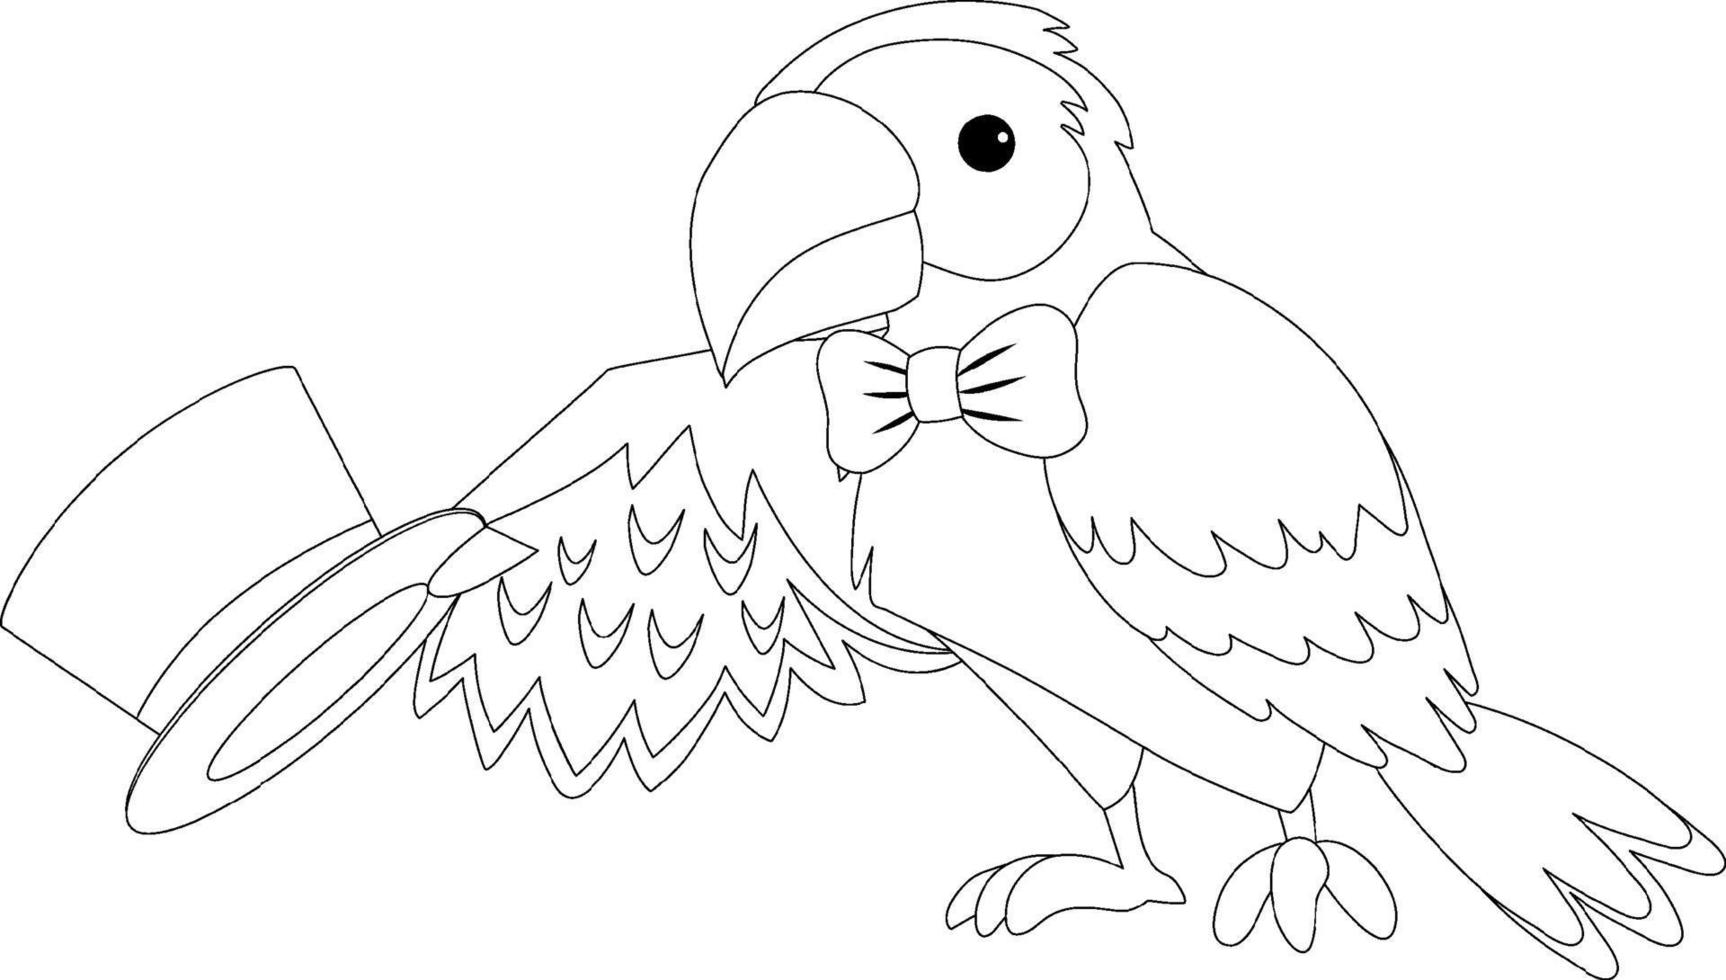 personnage de doodle noir et blanc de perroquet de cirque vecteur